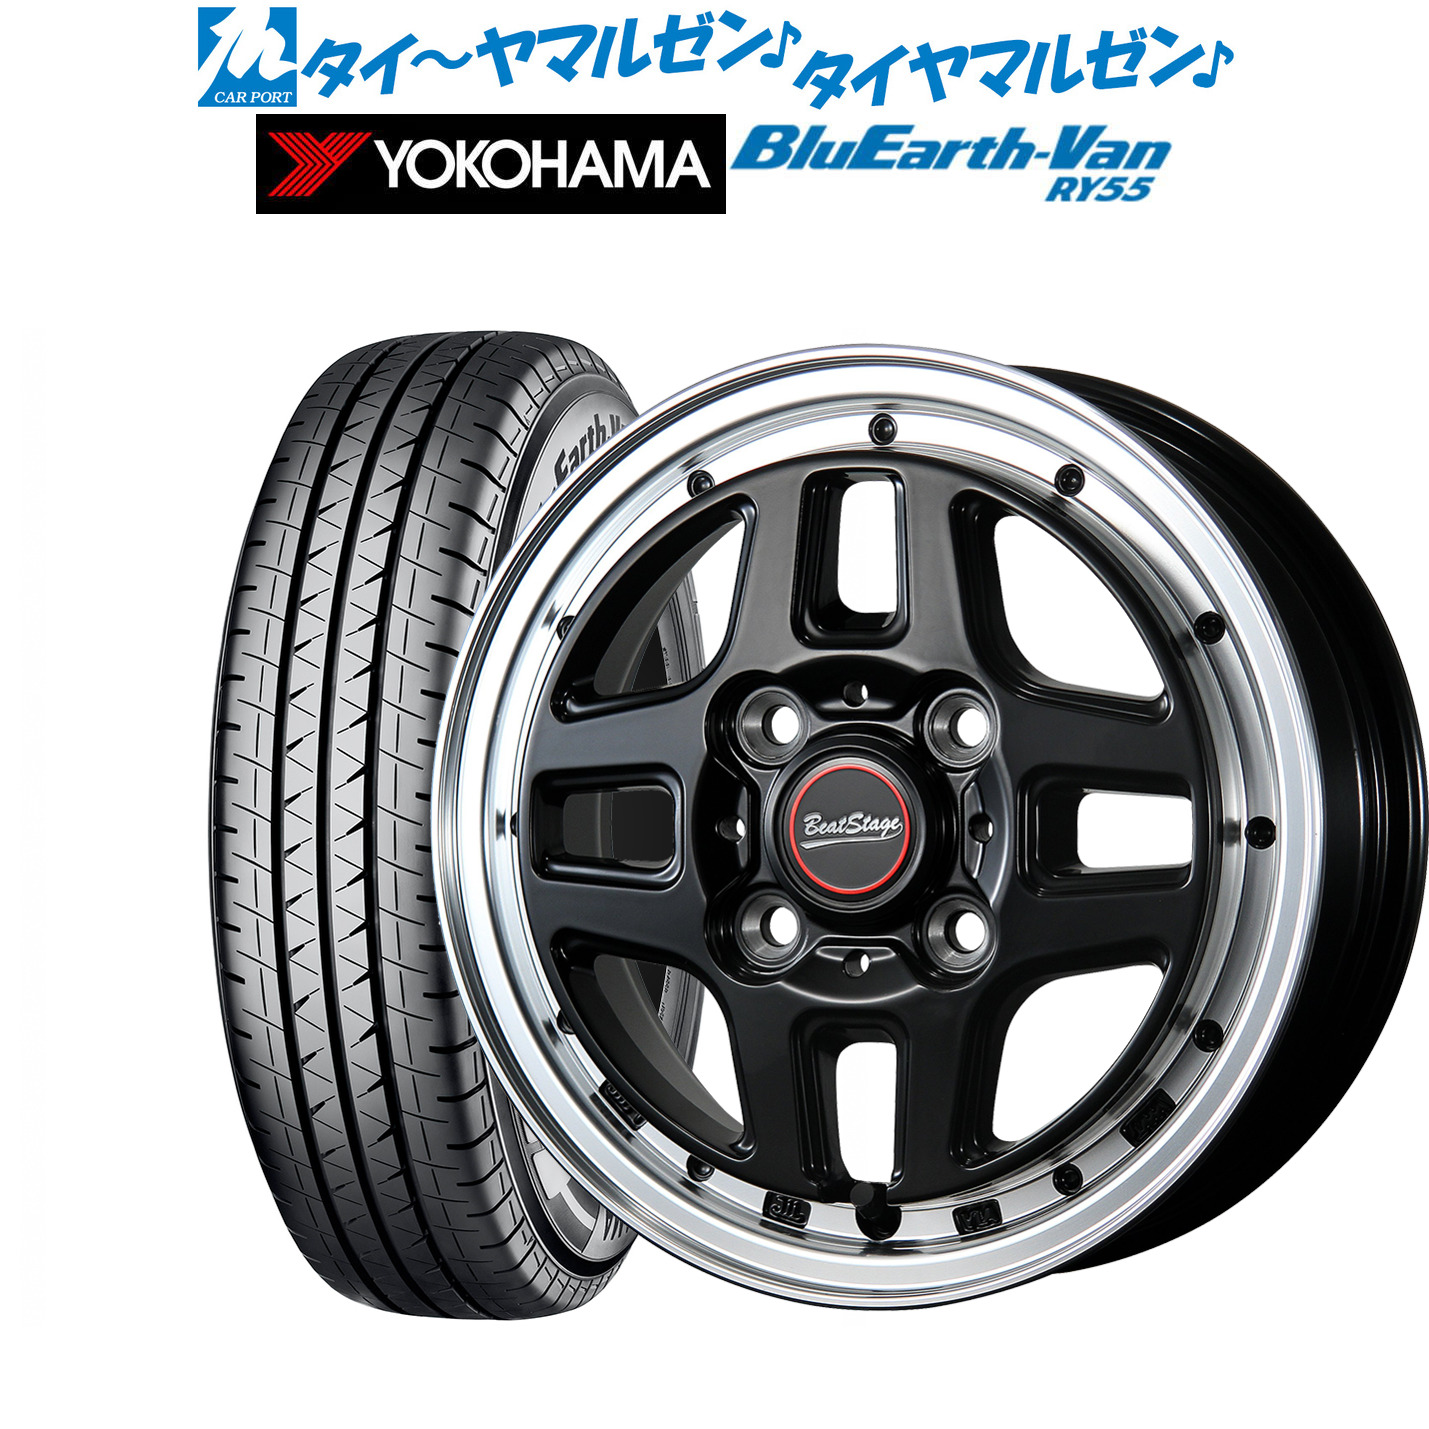 売れ筋新商品 145 80R12 LT YOKOHAMA 新品サマータイヤ アルミセット